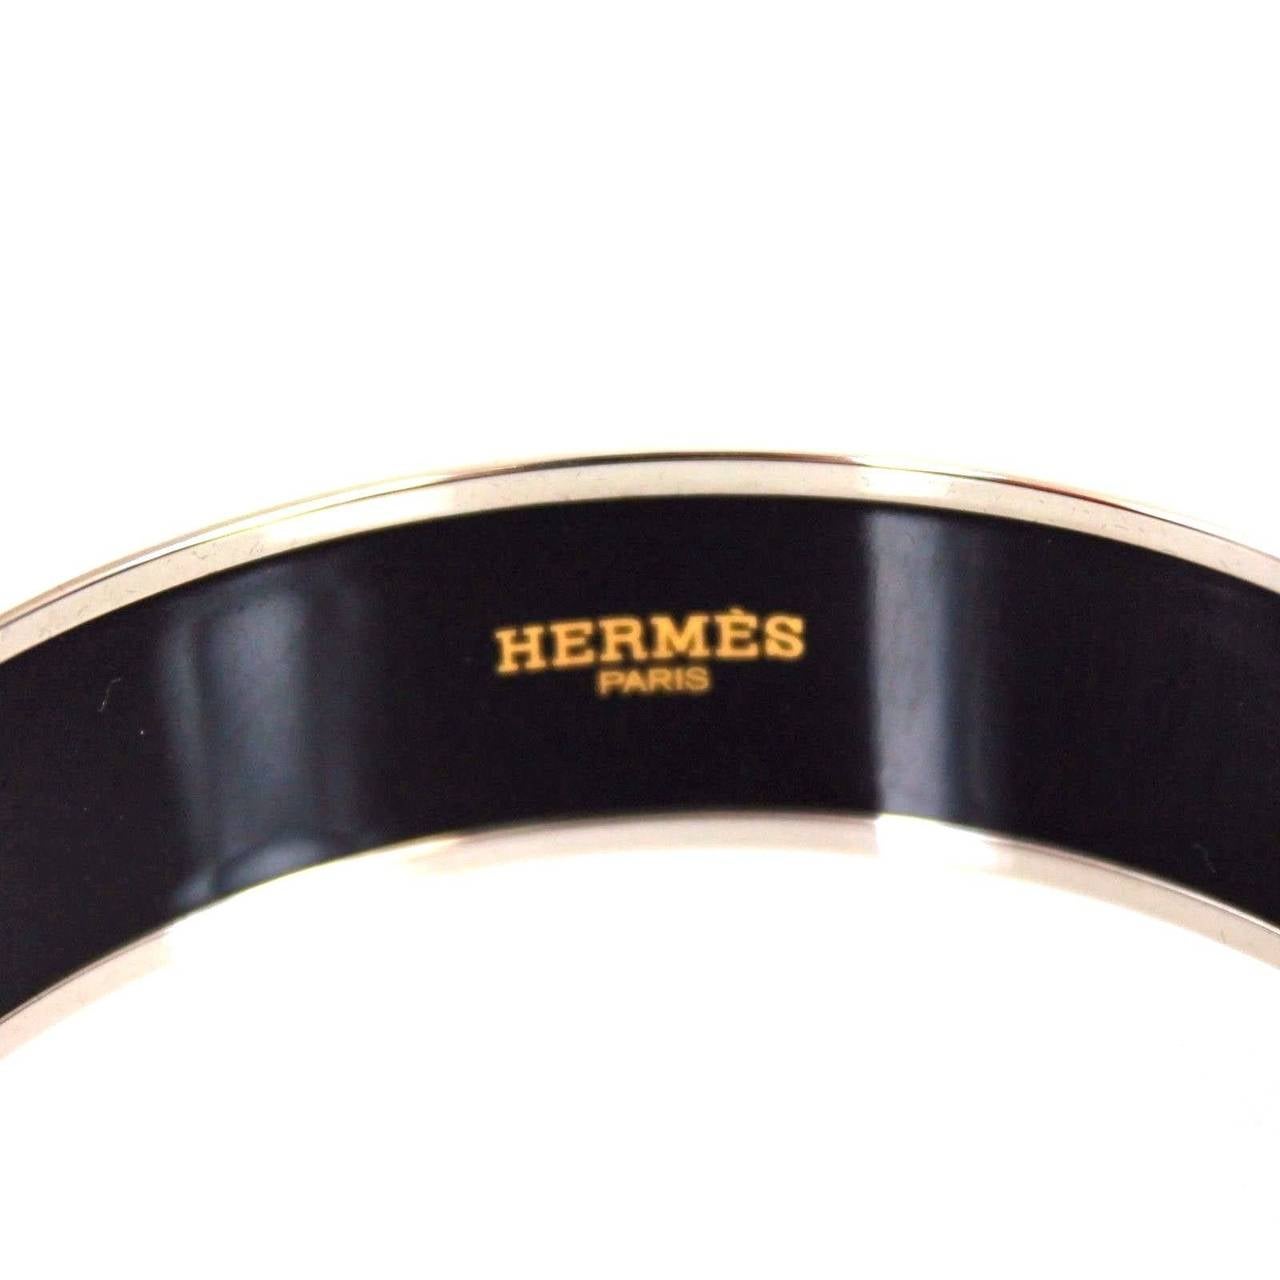 Hermes wide printed enamel bracelet

Palladium plated, 1